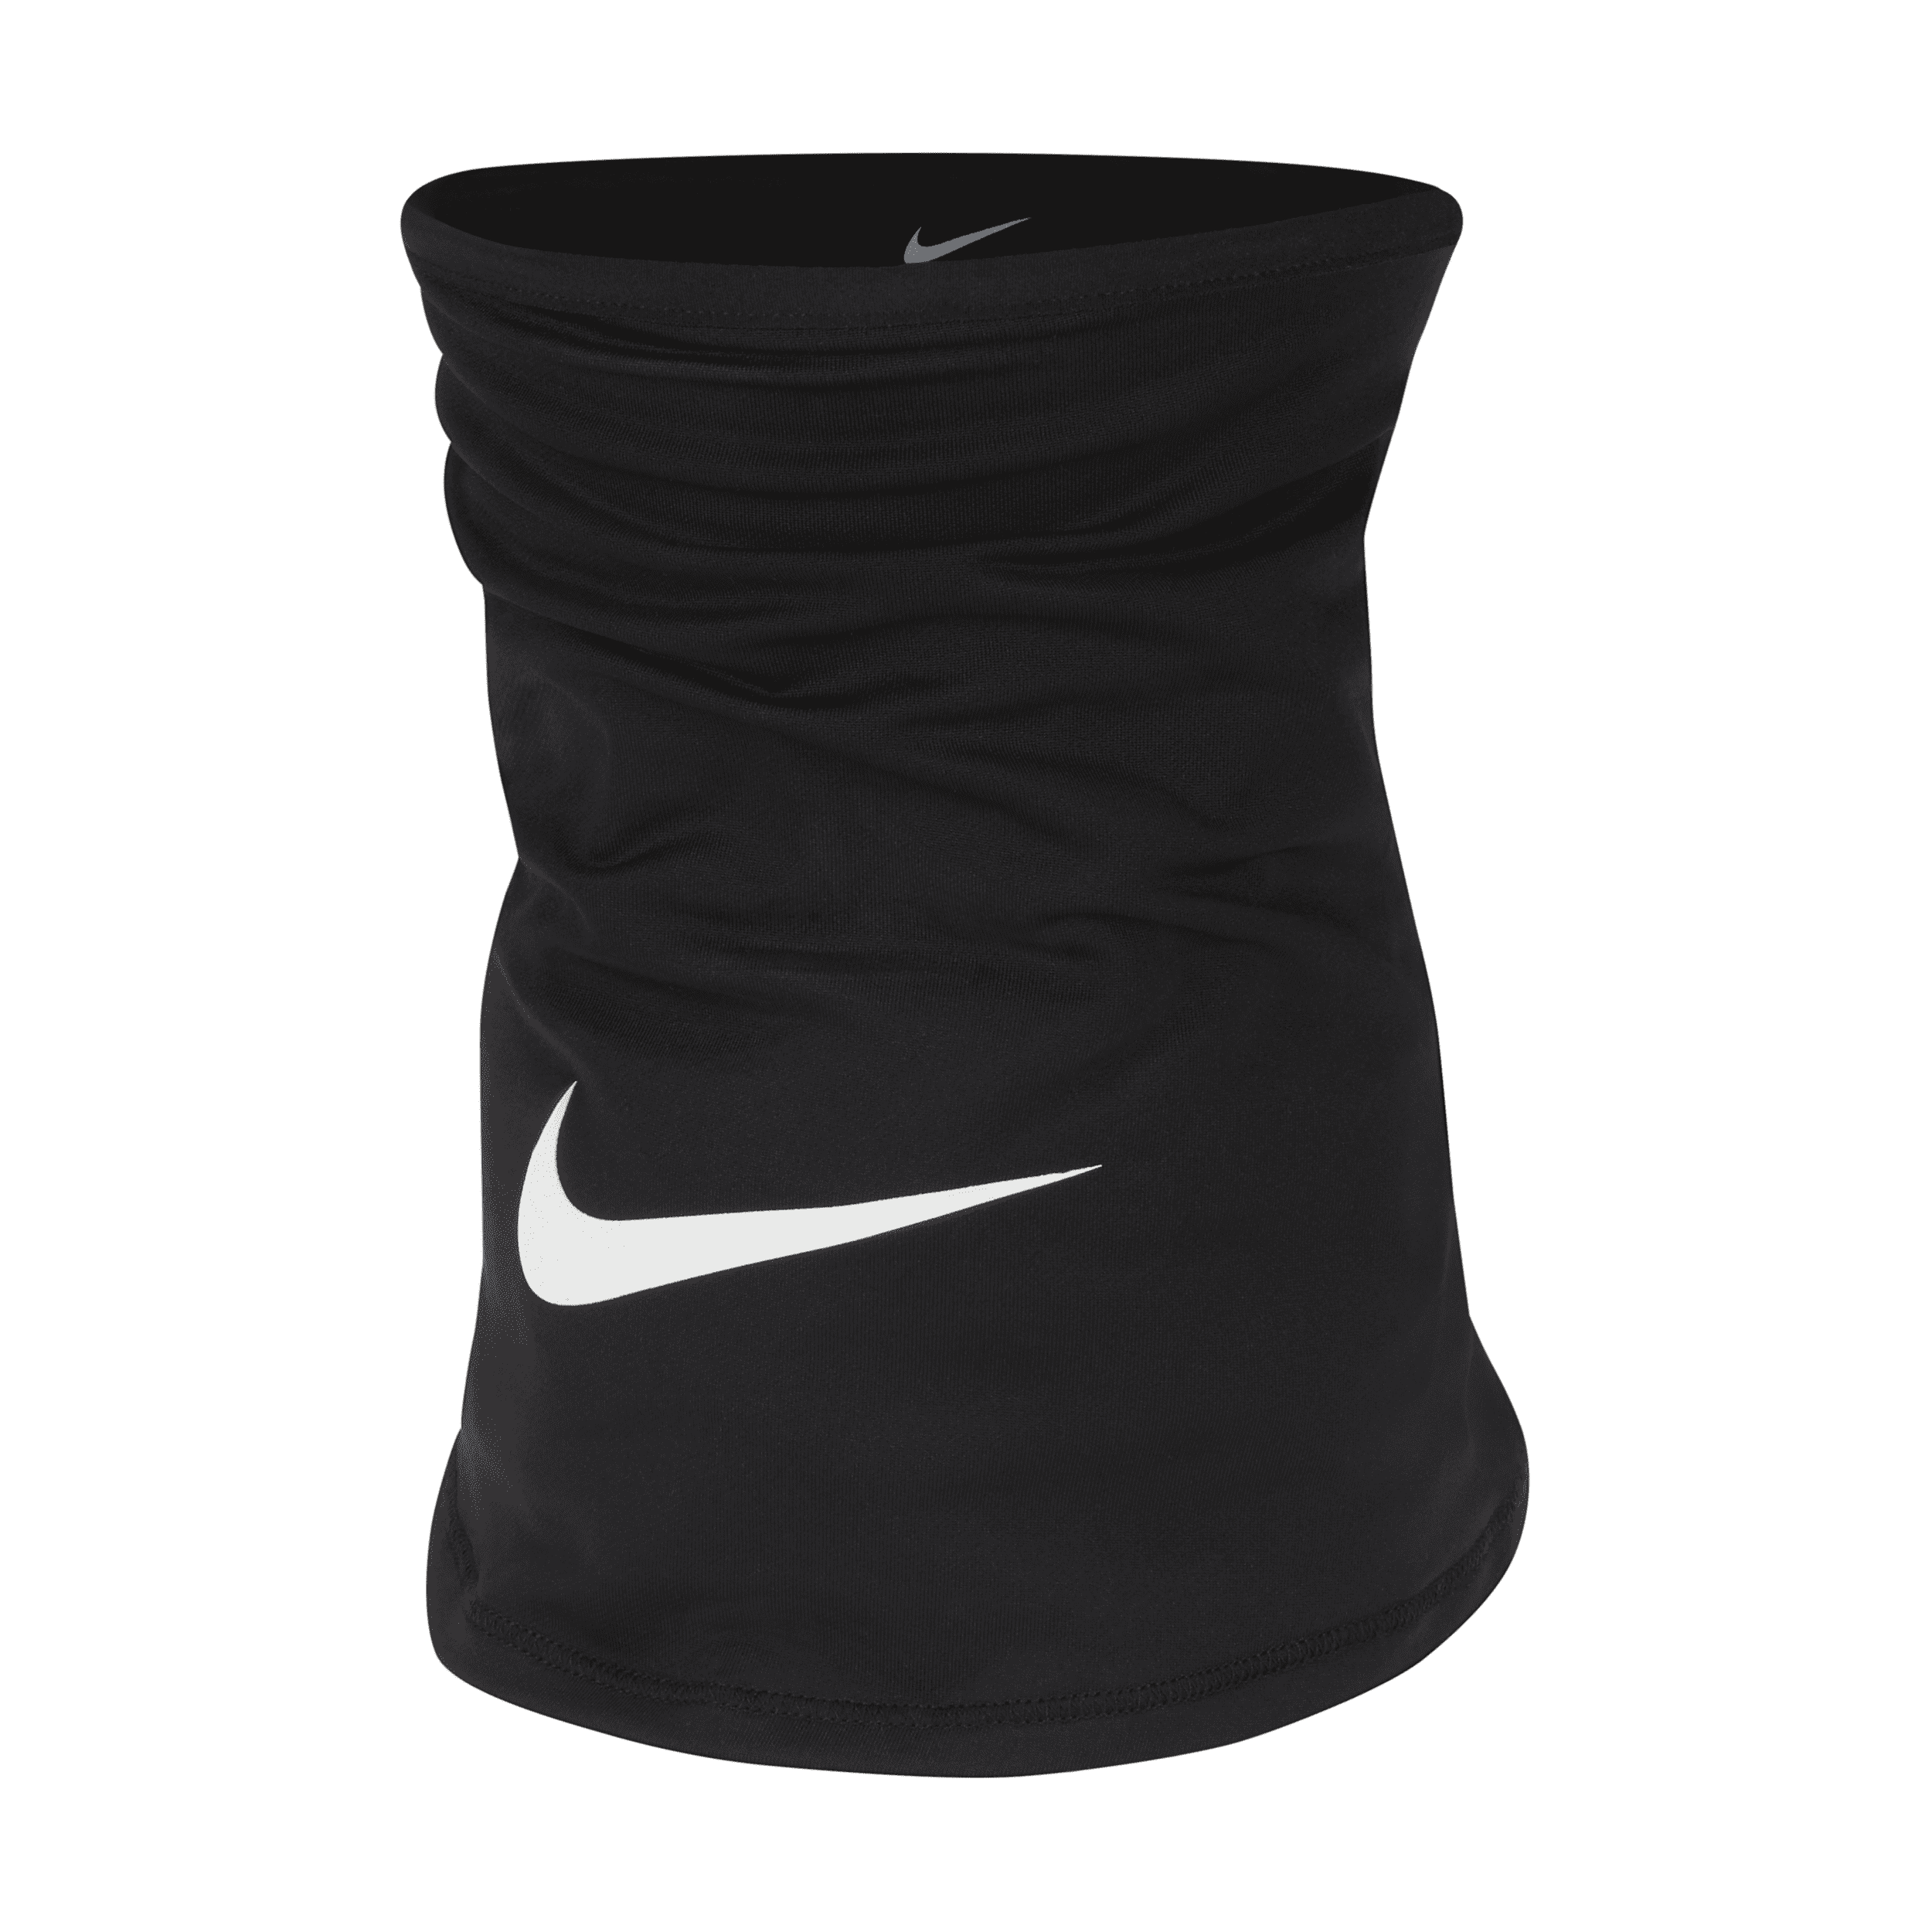 Nike Winter Warrior Dri-FIT-fodboldhalsvarmer til mænd - sort